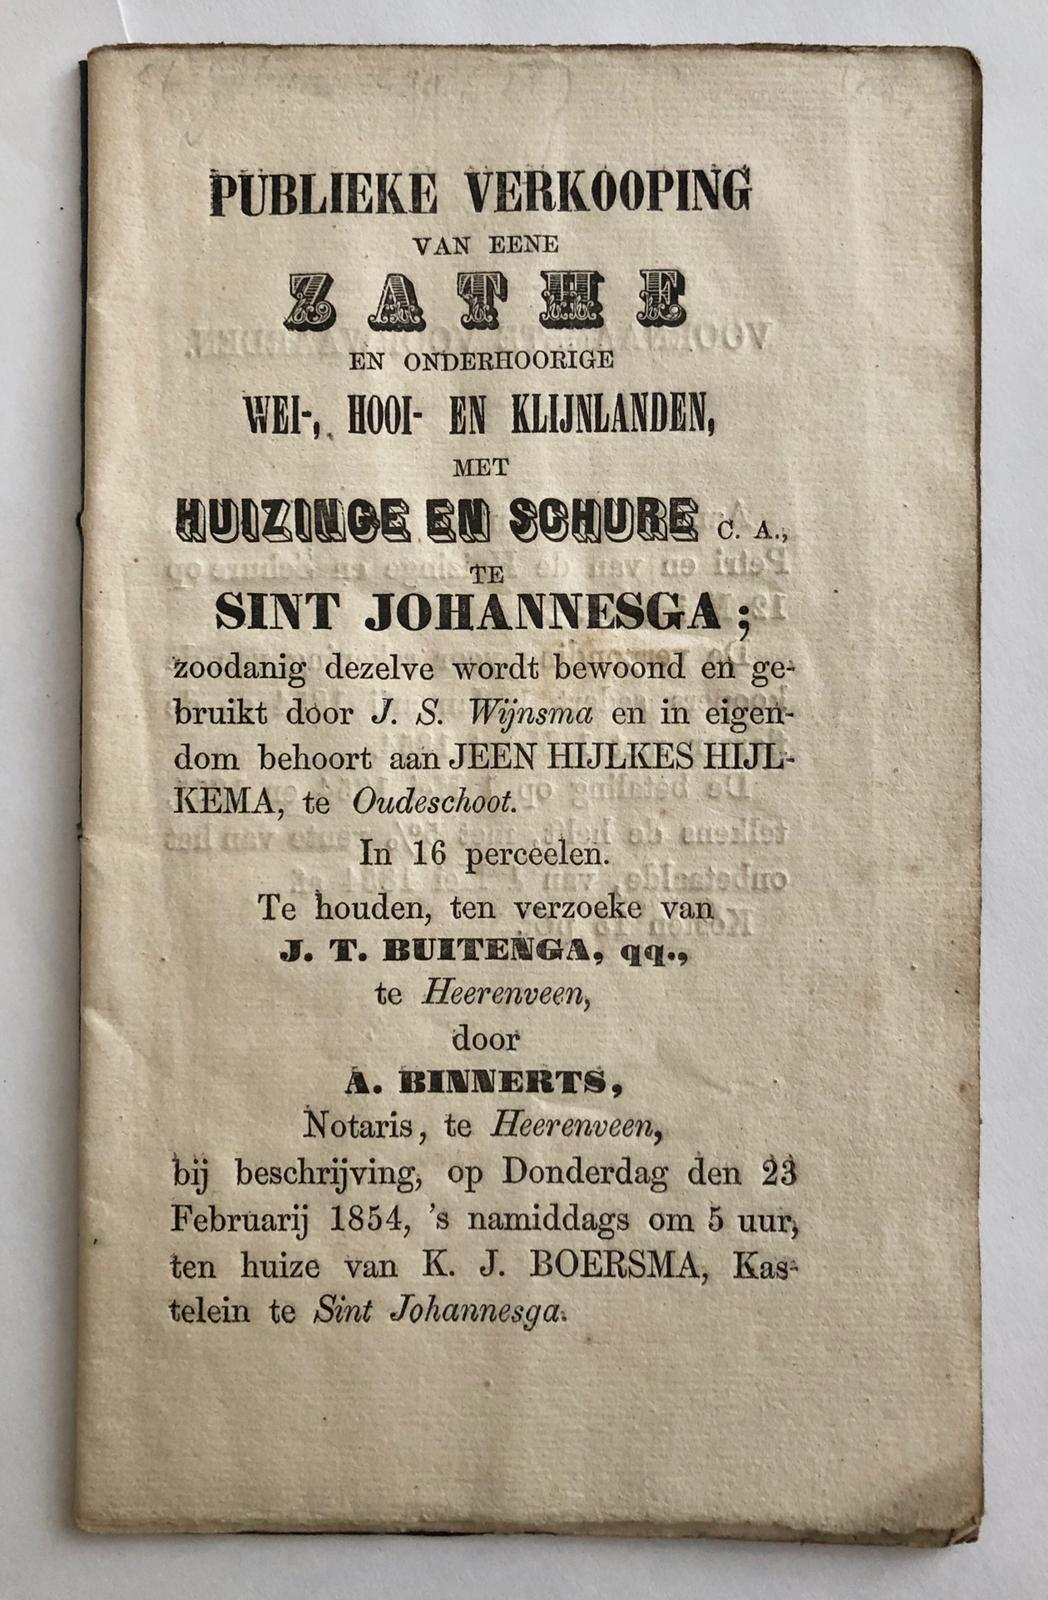 [VEILINGBOEKJE ONROEREND GOED] - [Veilingboekje betreffende onroerend goed St. Johannesga, Friesland] Publieke Verkooping van eene Zathe en onderhoorige wei-, hooi- en klijnlanden, Notaris J. T. Buitenga te Heerenveen, 1854, 16 pp.